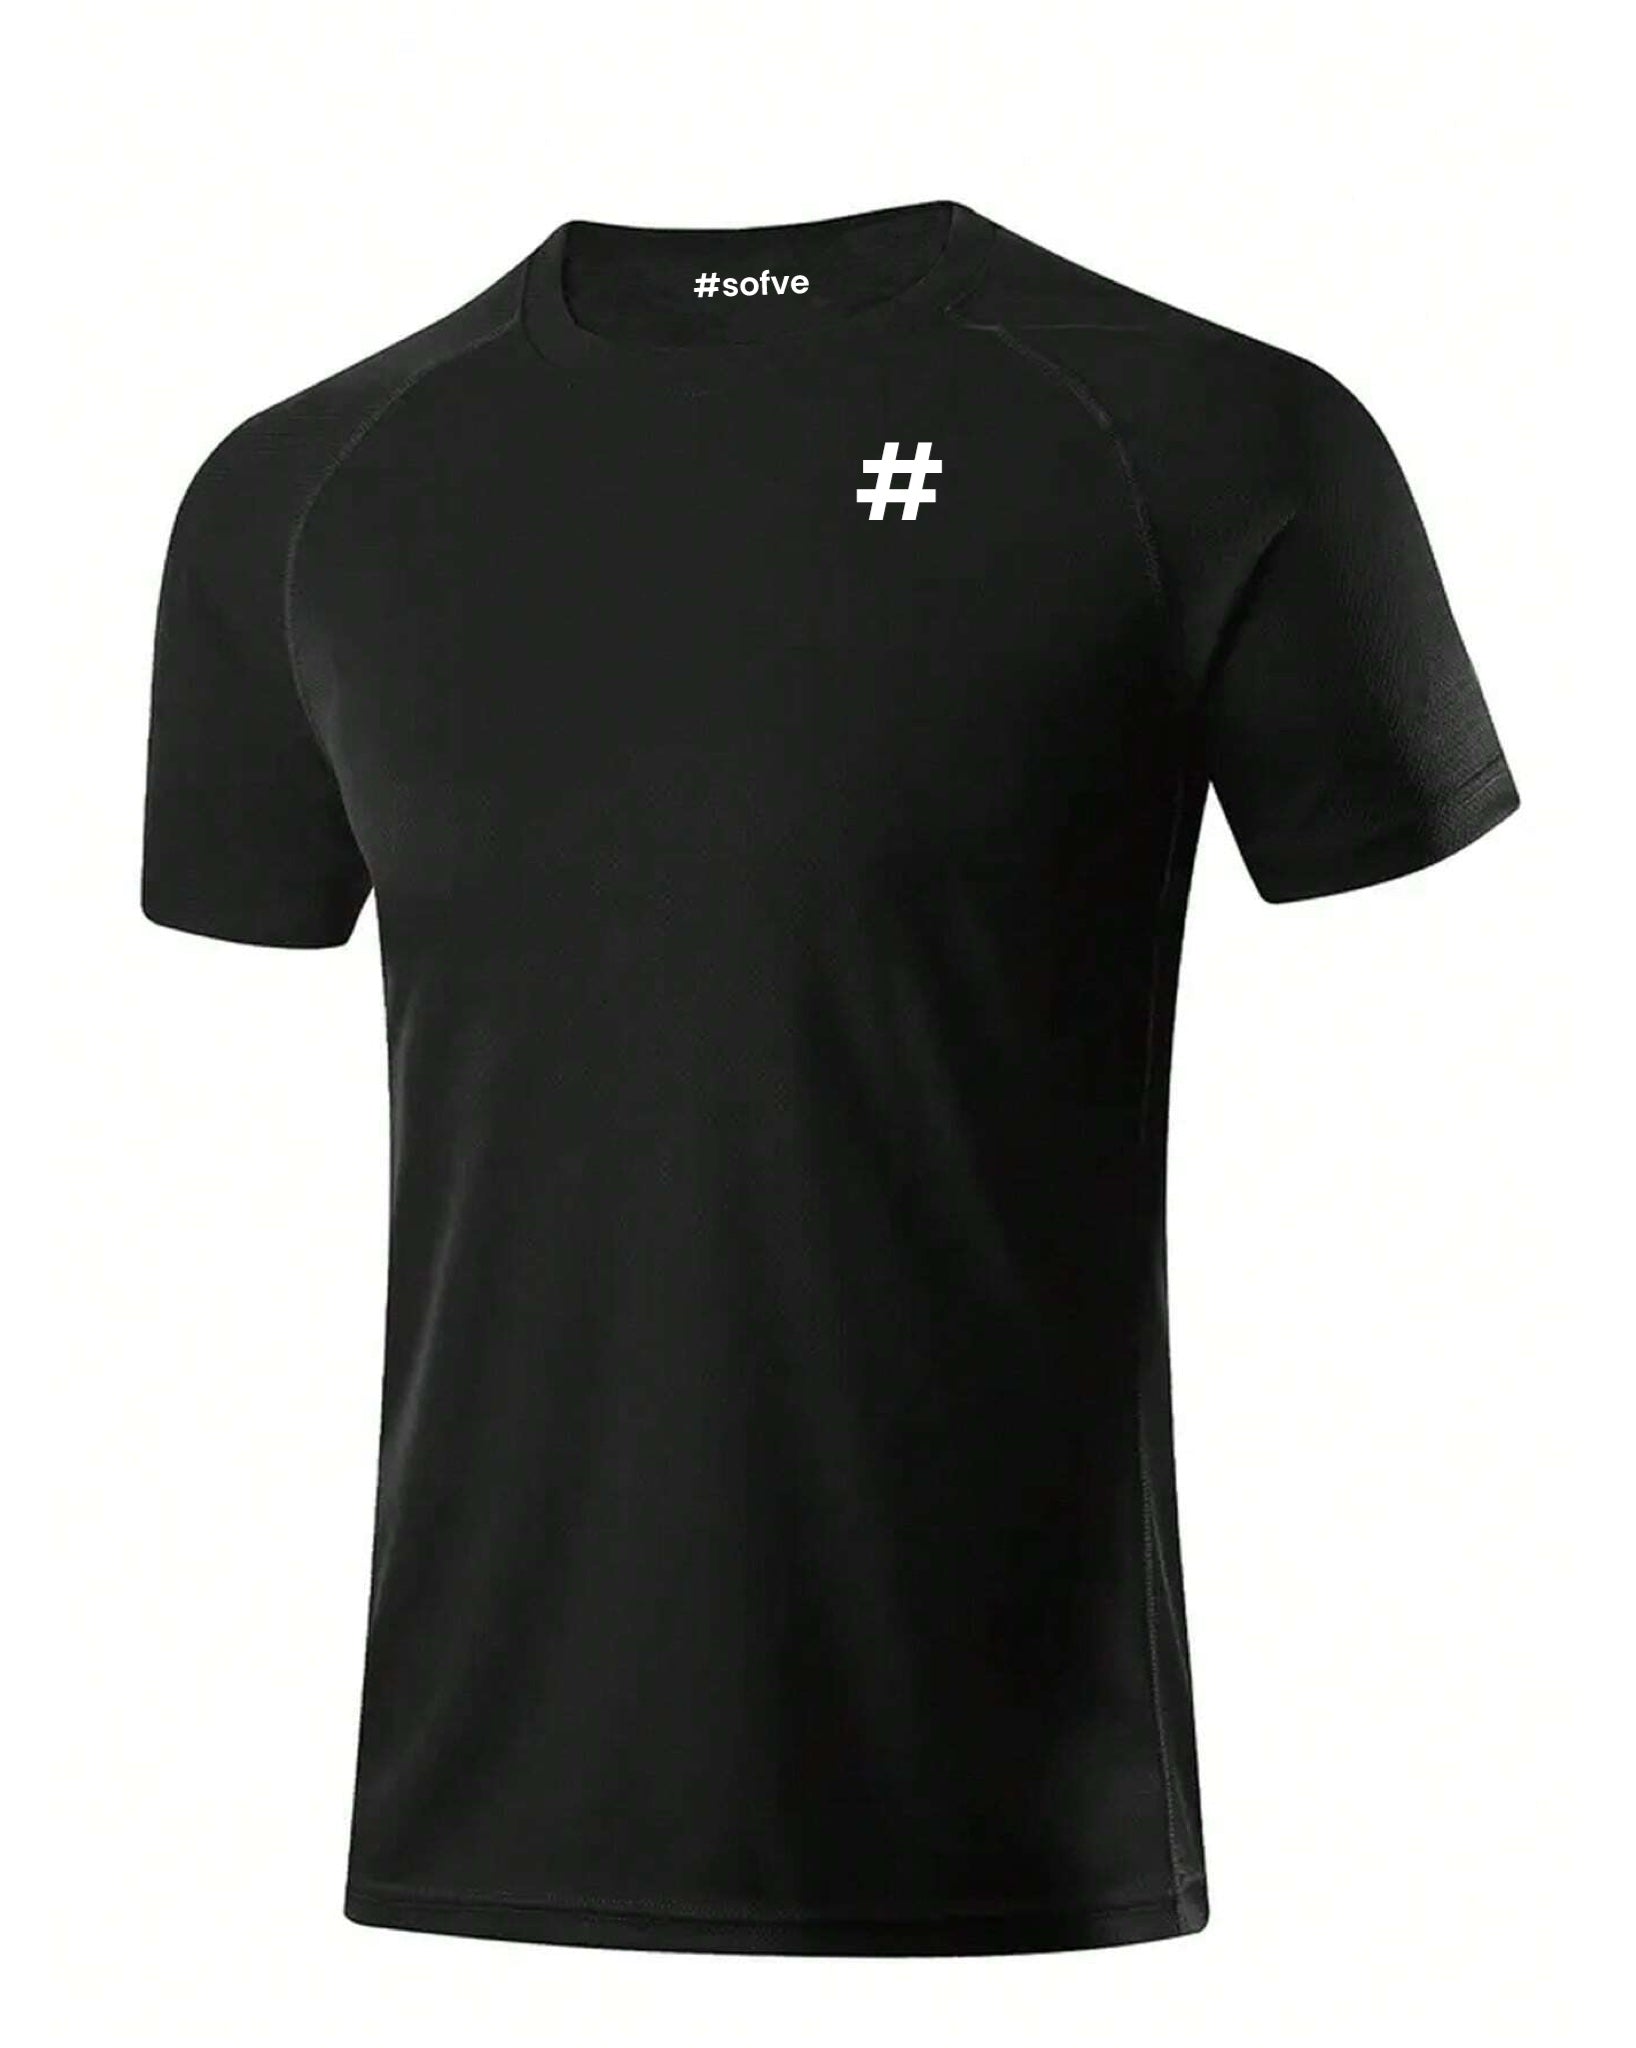 6537 a01-03 Camiseta deportiva unicolor de manga raglán